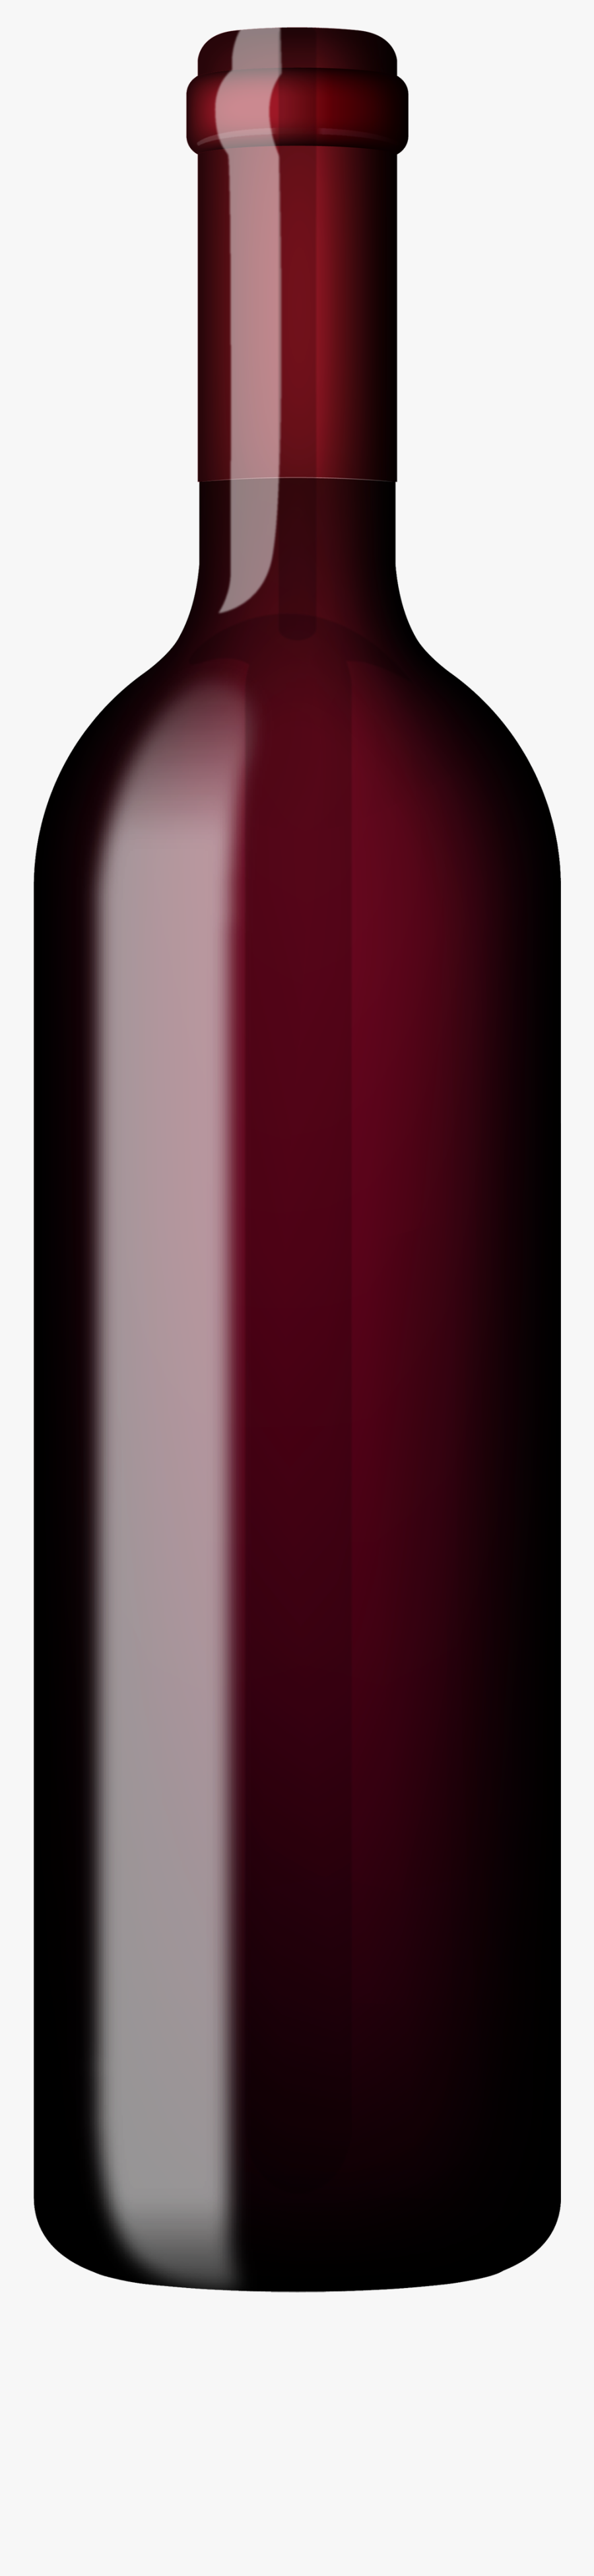 Wine Bottle Download Wine Clip Art Free Clipart Of - Red Wine Bottle Clip Art, Transparent Clipart